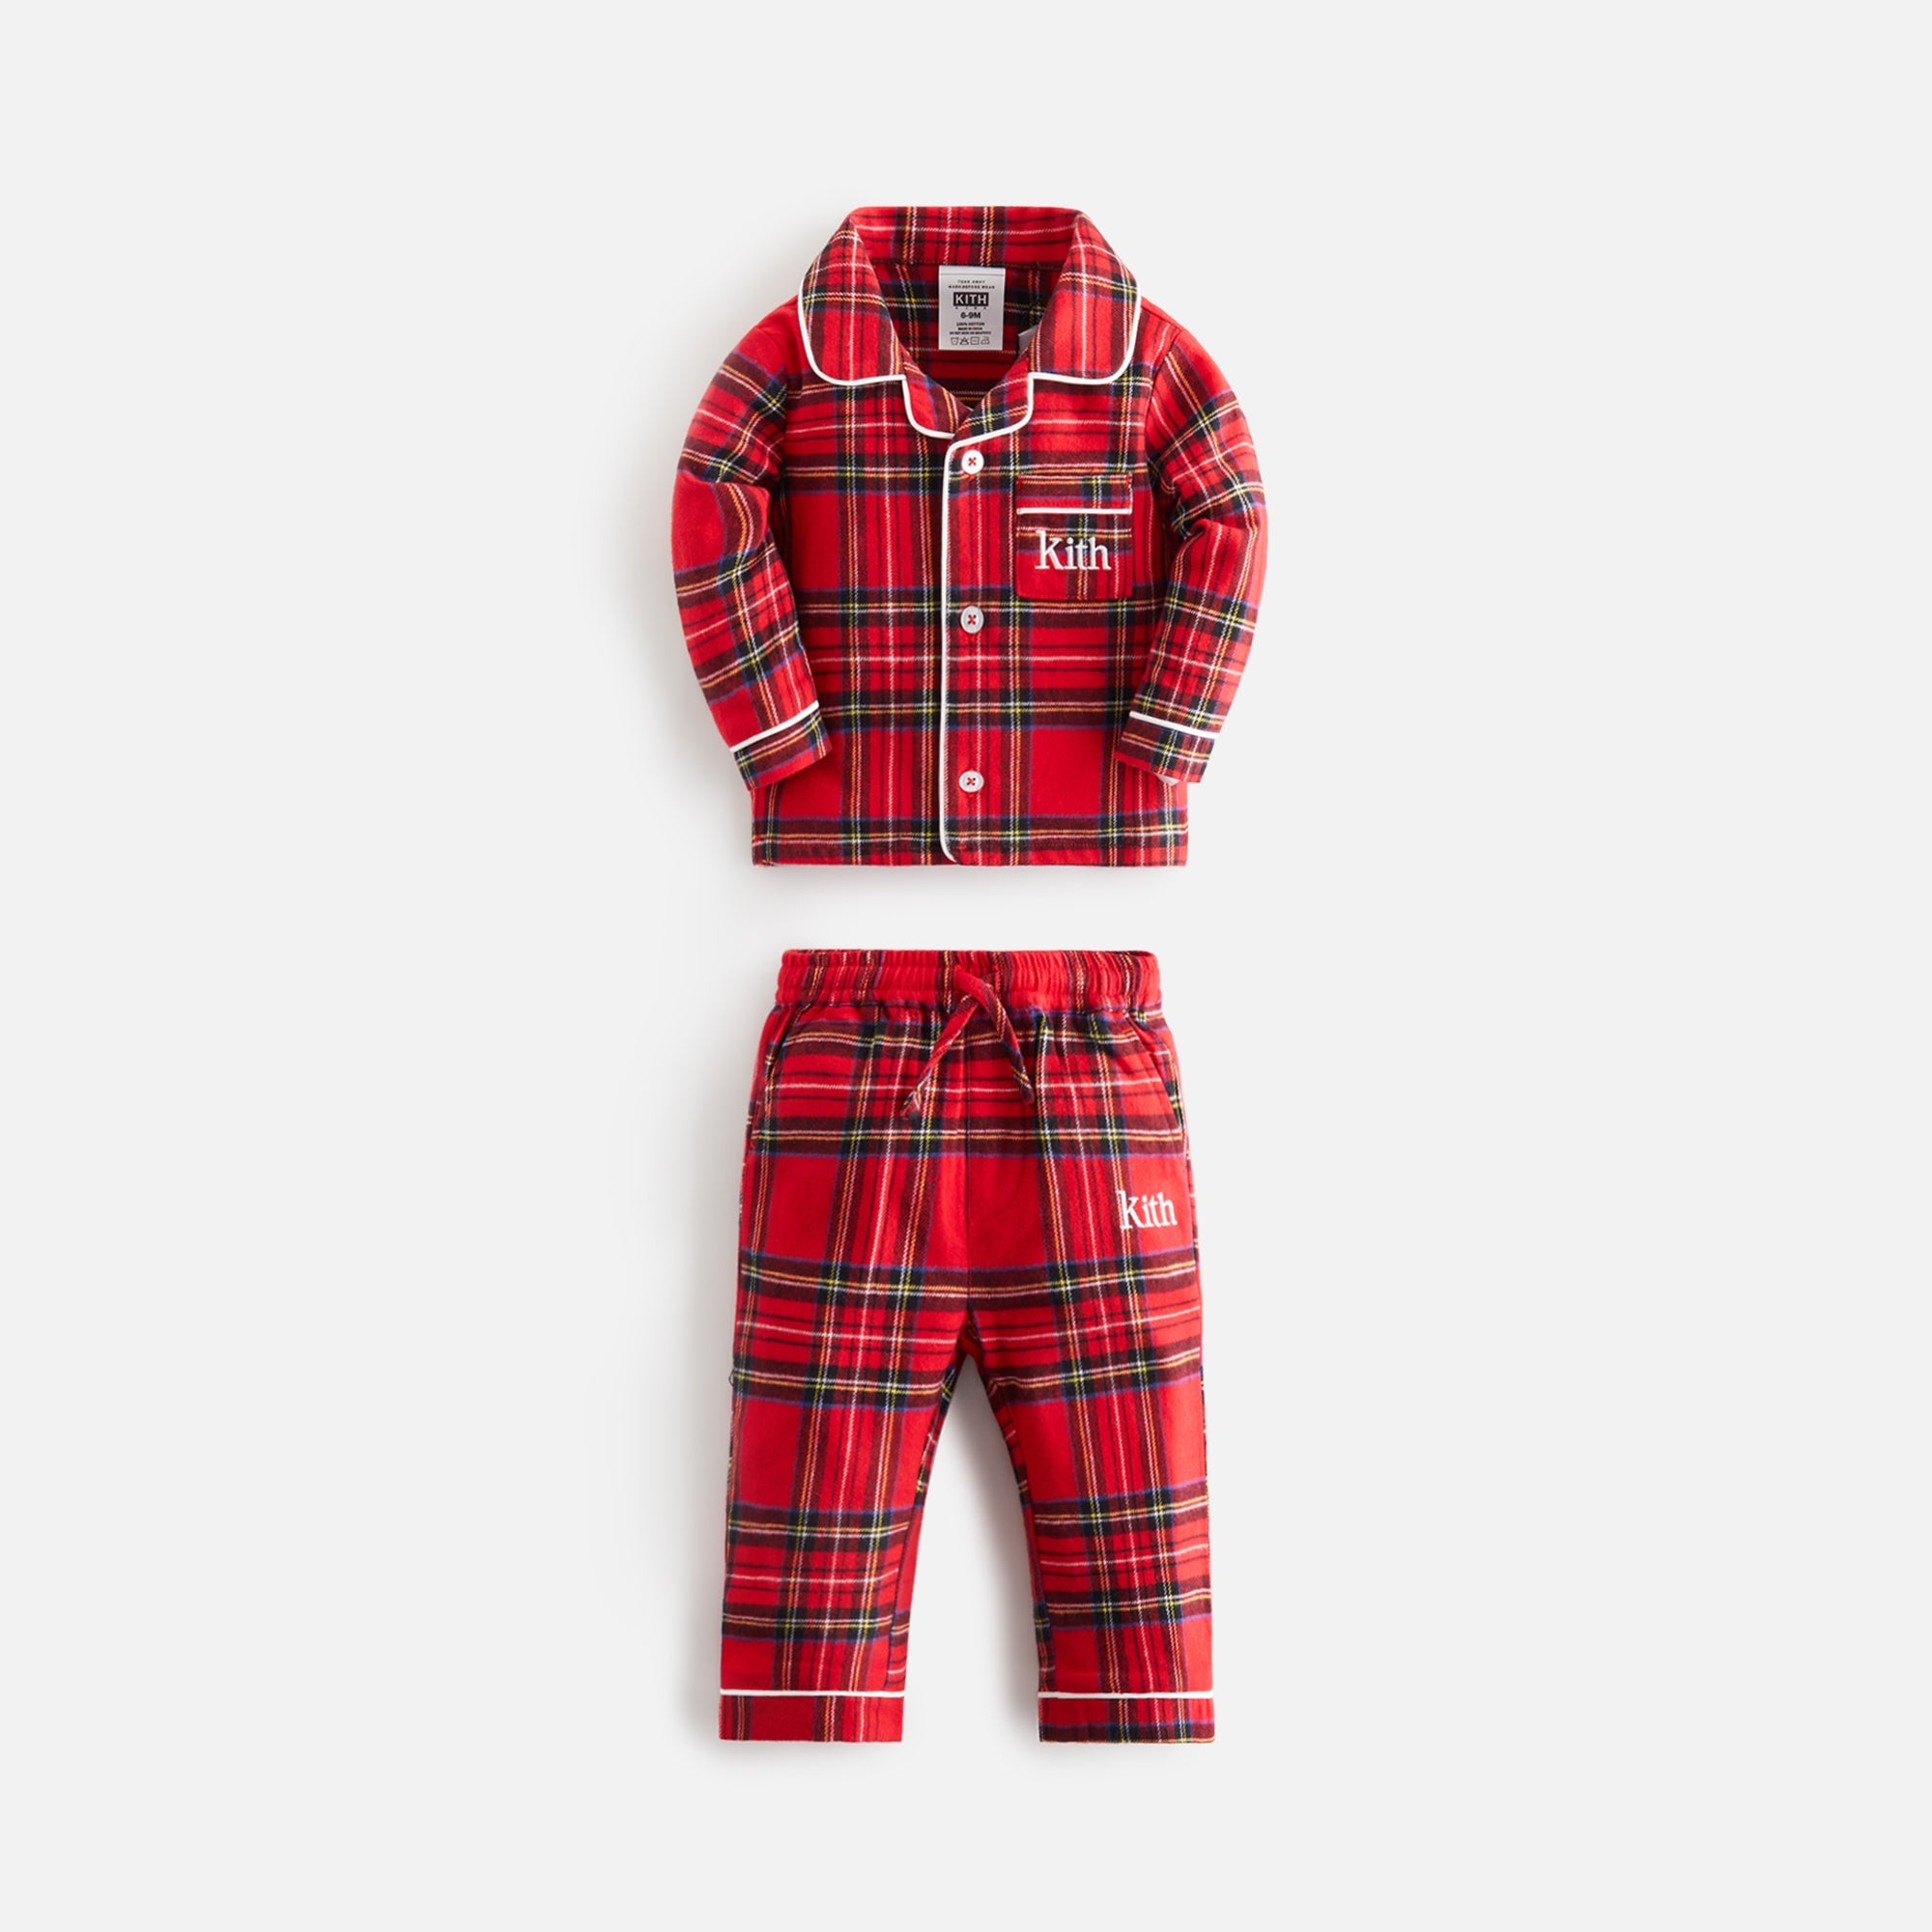 Kithmas Baby Brushed Cotton Plaid Pajama Set - Present PH